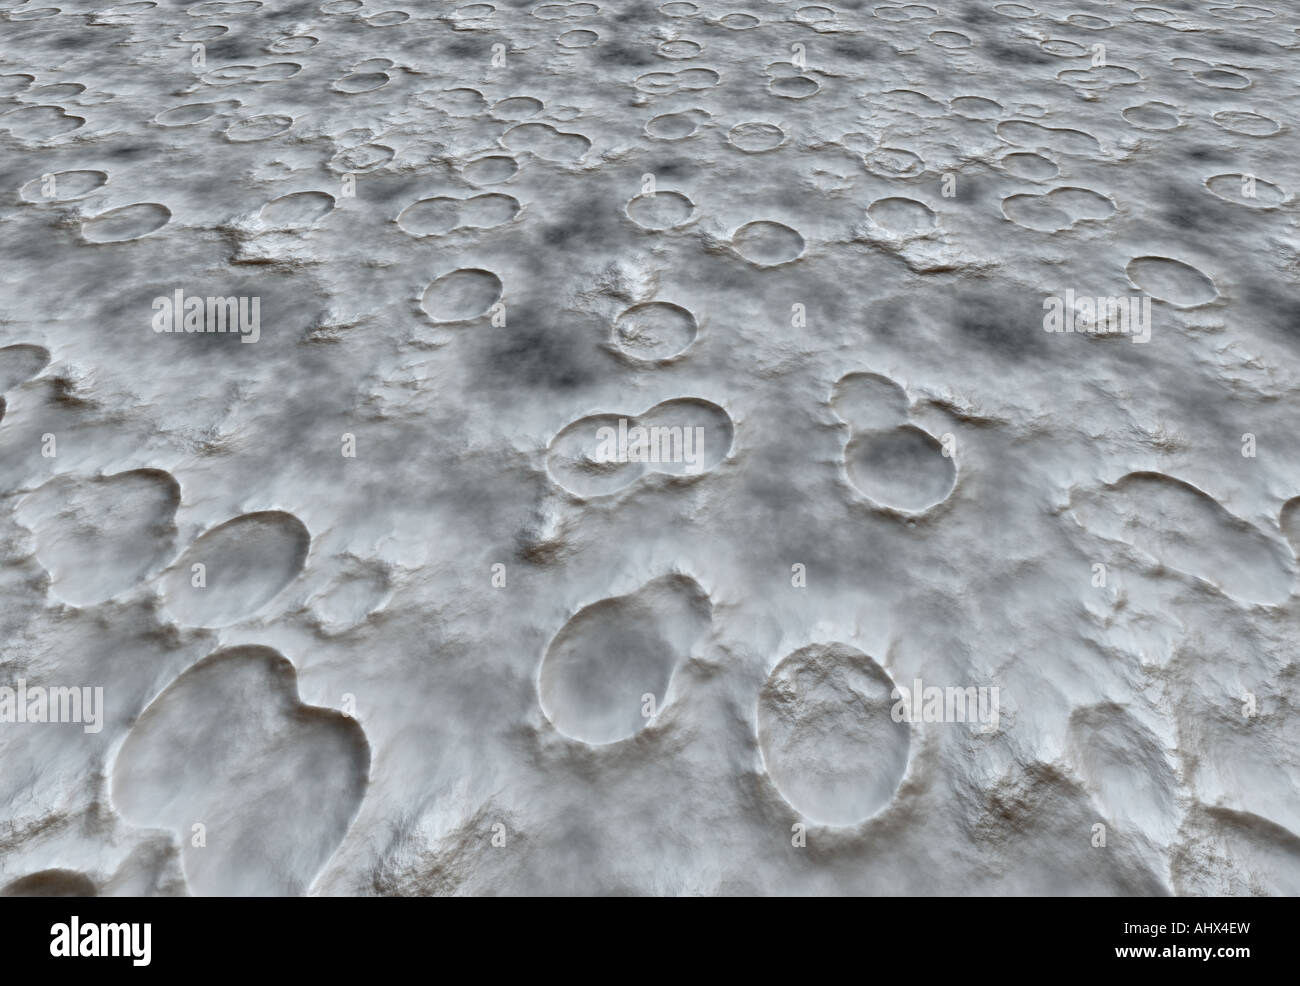 Image de fond de la surface de la lune de cratères Banque D'Images